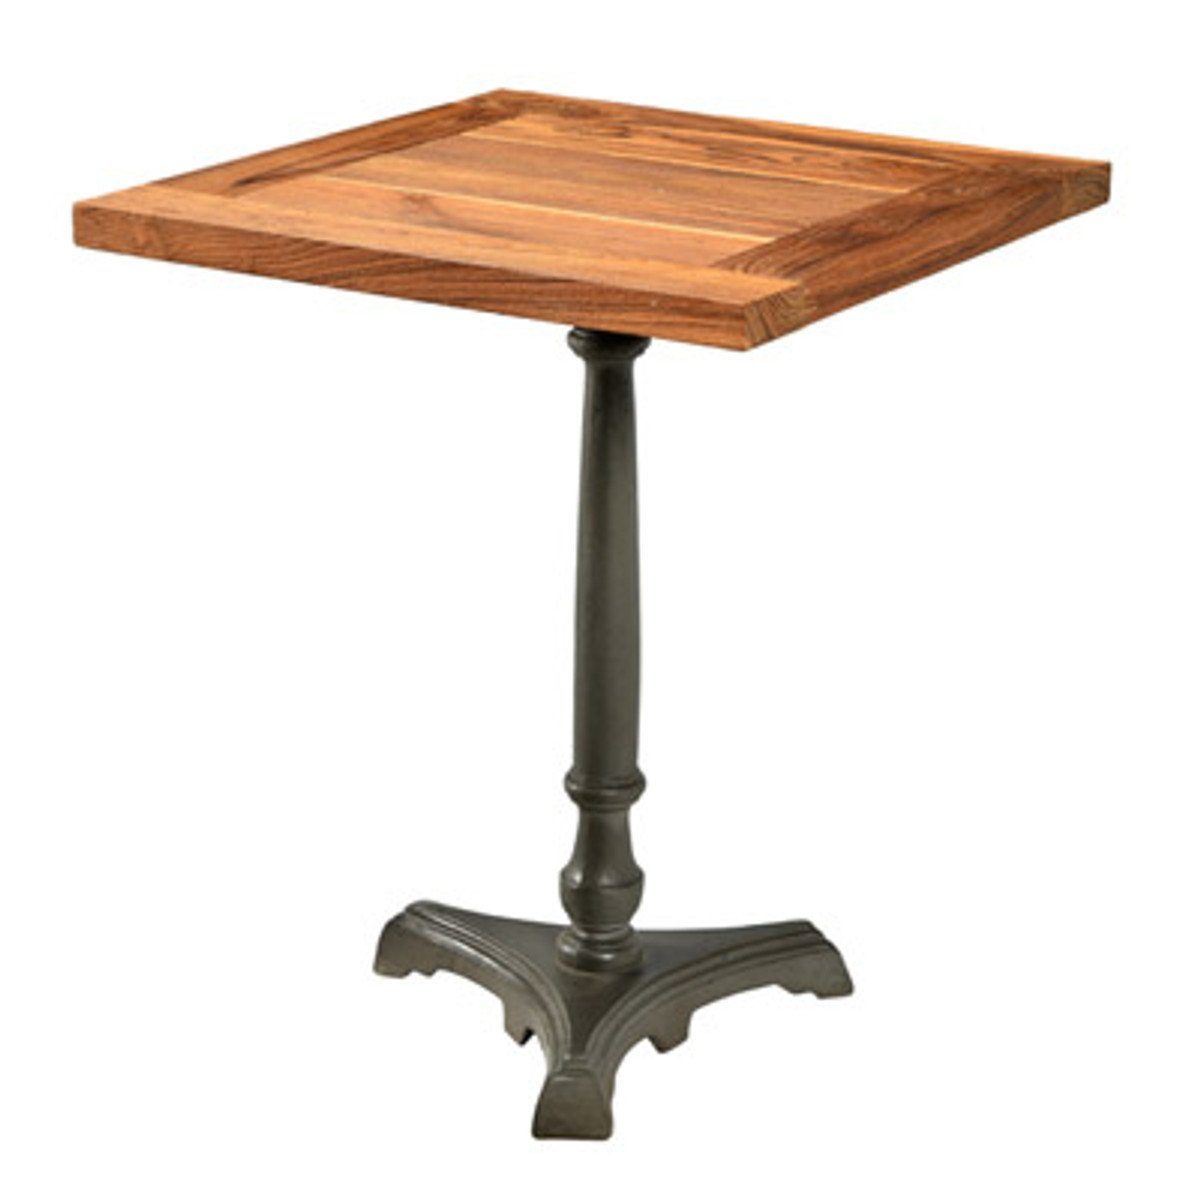 Eisen 60 cm Tisch Beistelltisch Mod2 Holz - Beistelltisch / Padrino Cafe 60 Restaurant H74 Casa x x Luxus / Jugendstil Möbel